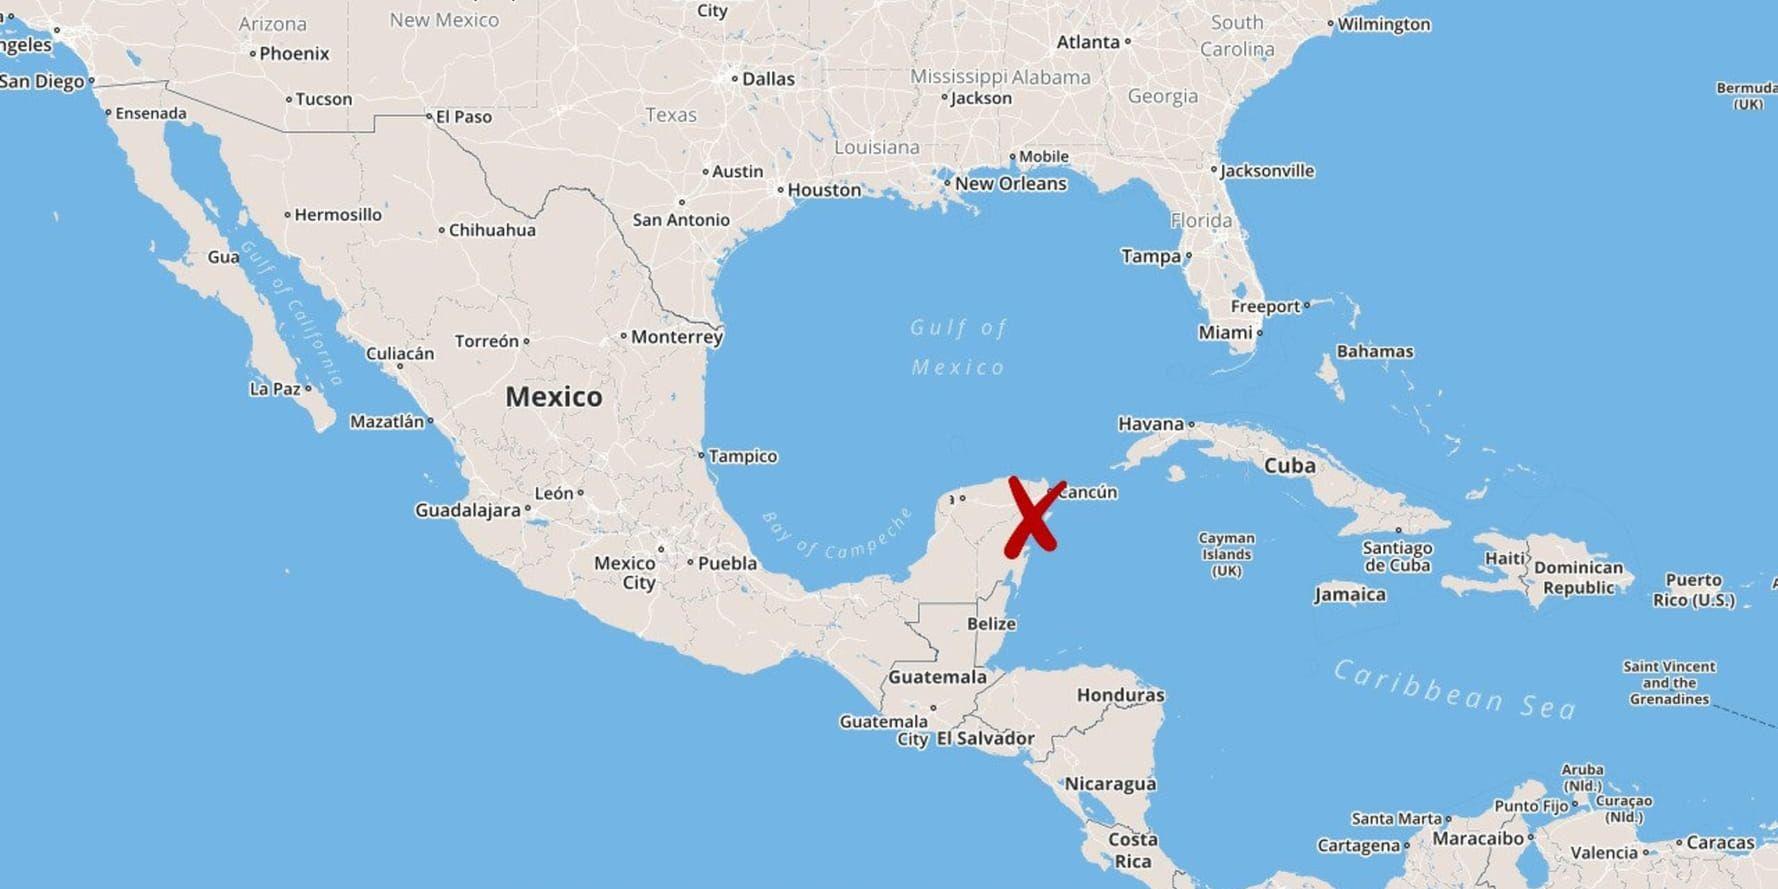 Akumal i delstaten Quintana Roo i Mexiko.